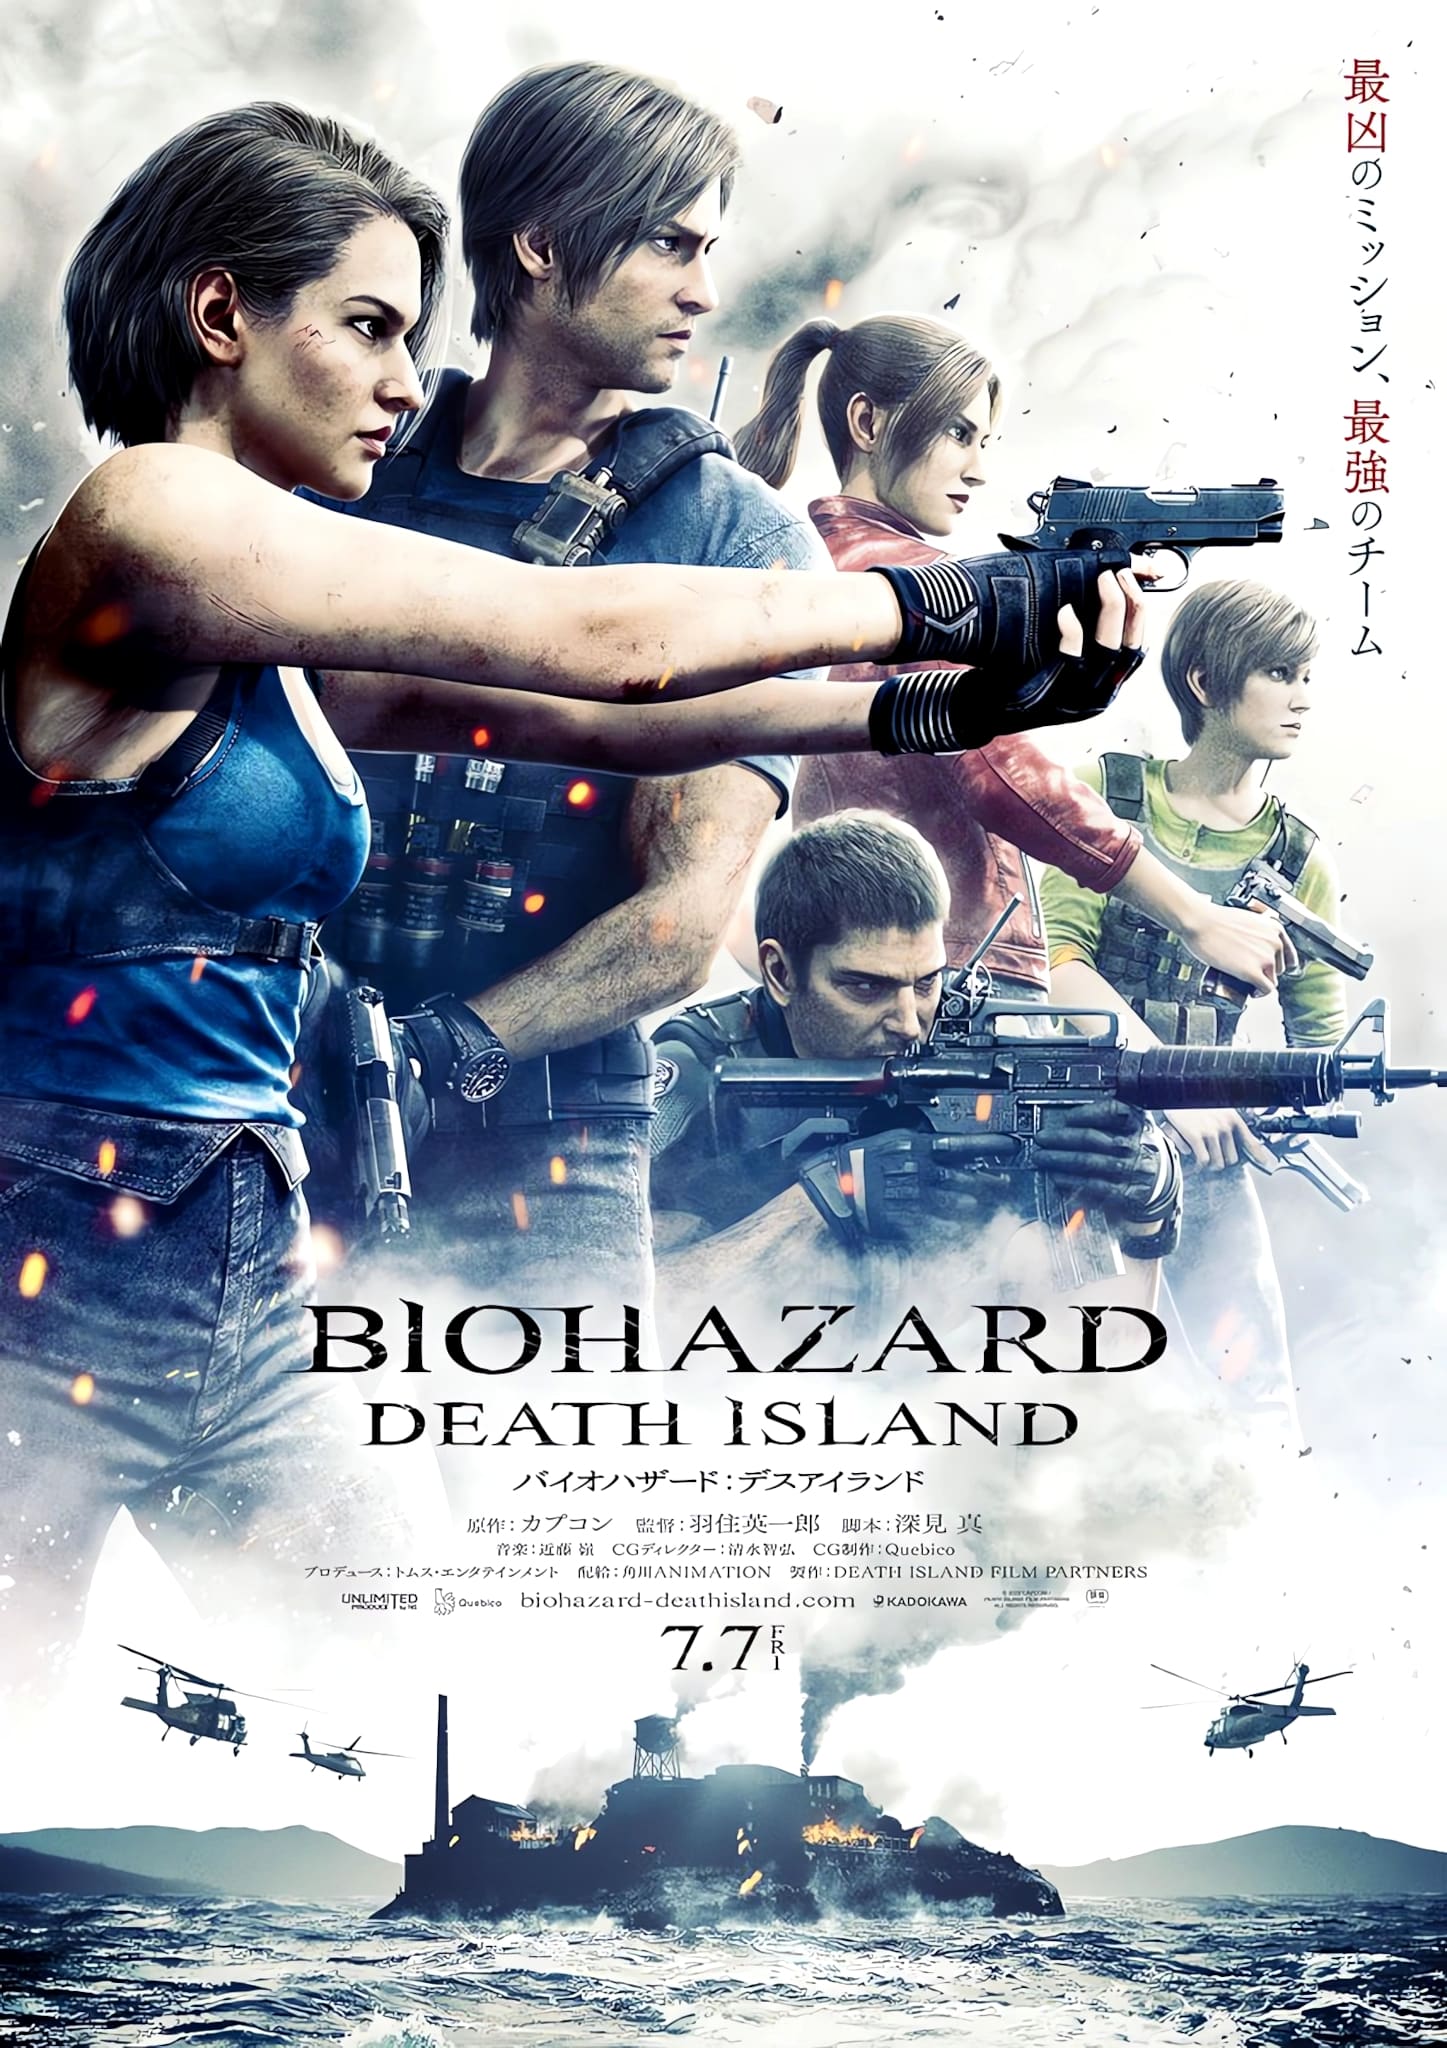 Premier visuel pour le film Resident Evil : Death Island